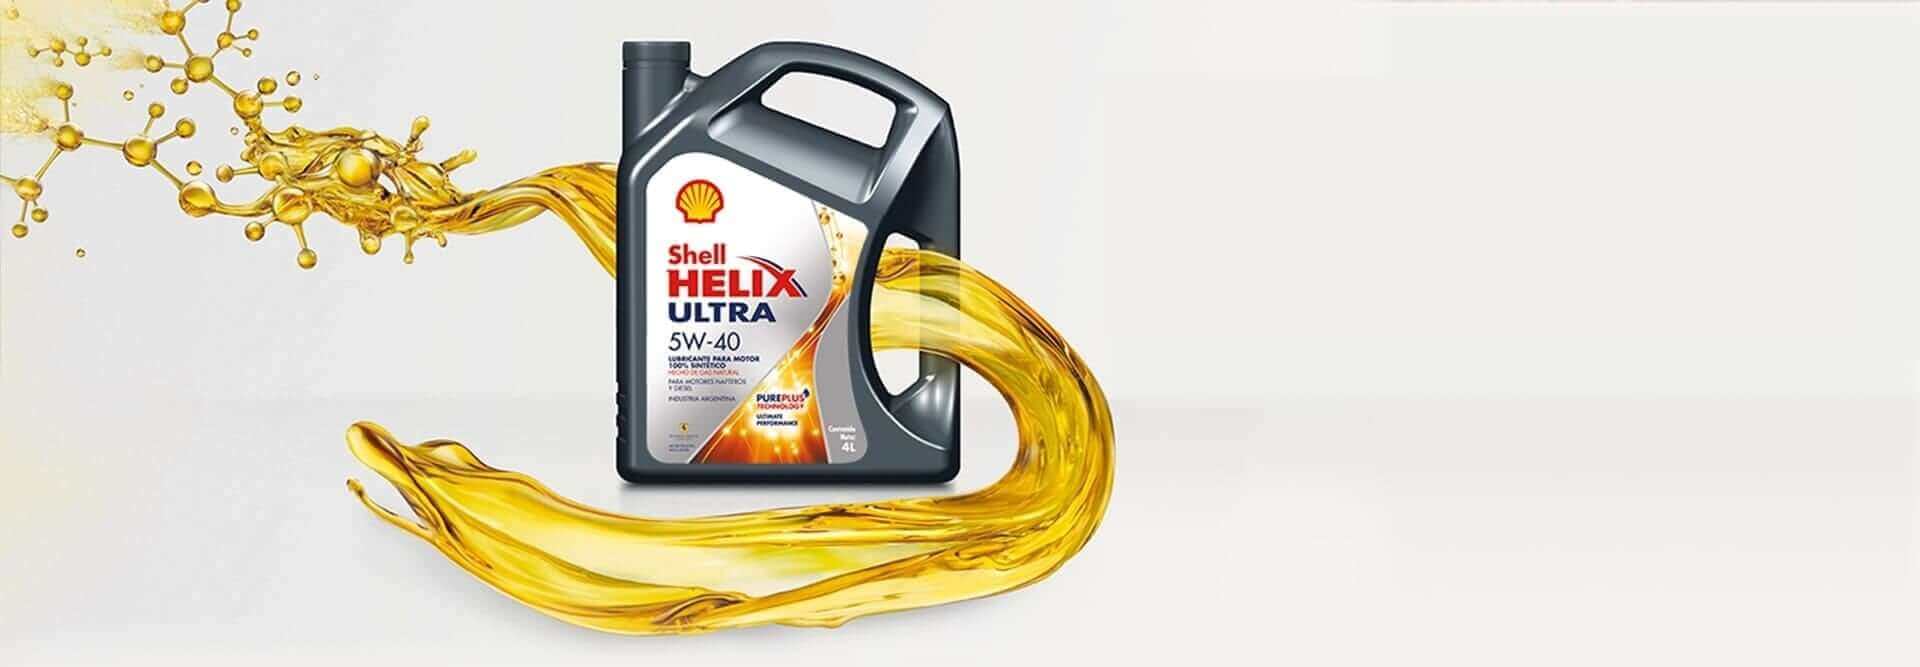 cambio de aceite y filtro para motor_ helix ultra